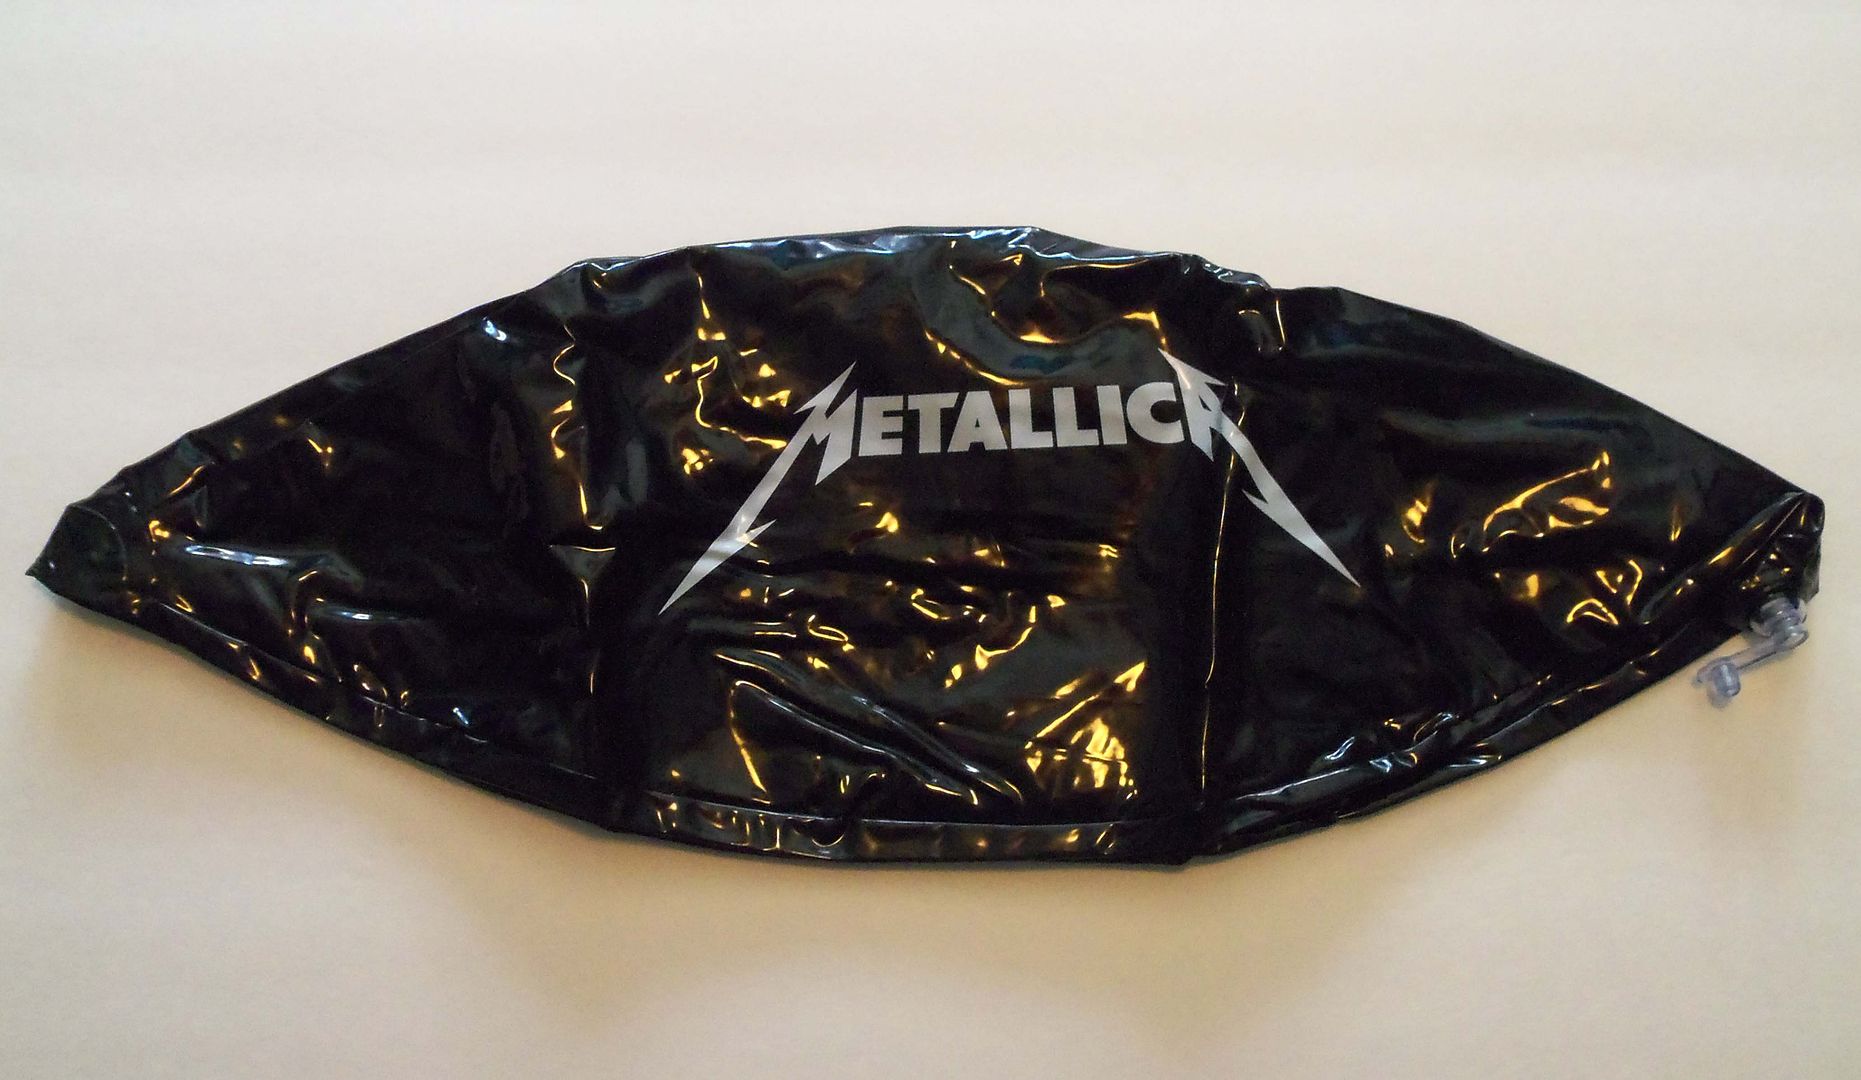  foto MetallicaBB-24_zps9d5d4367.jpg